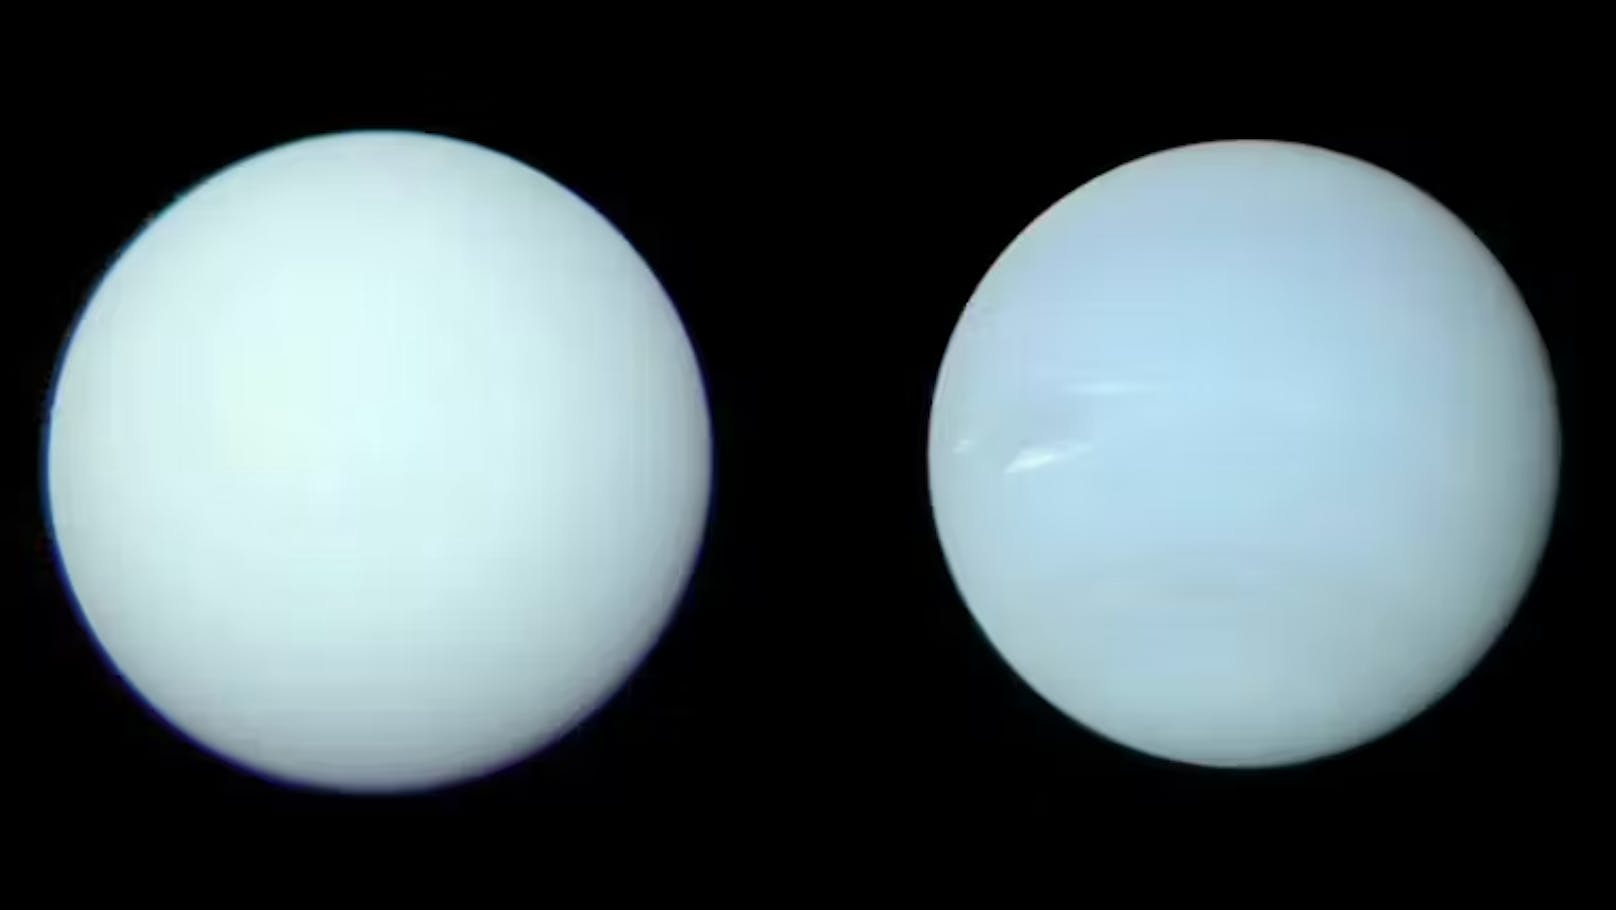 Eigentlich haben die zwei Planeten aber einen sehr ähnlichen Farbton, wobei Neptun (rechts) etwas bläulicher ist.